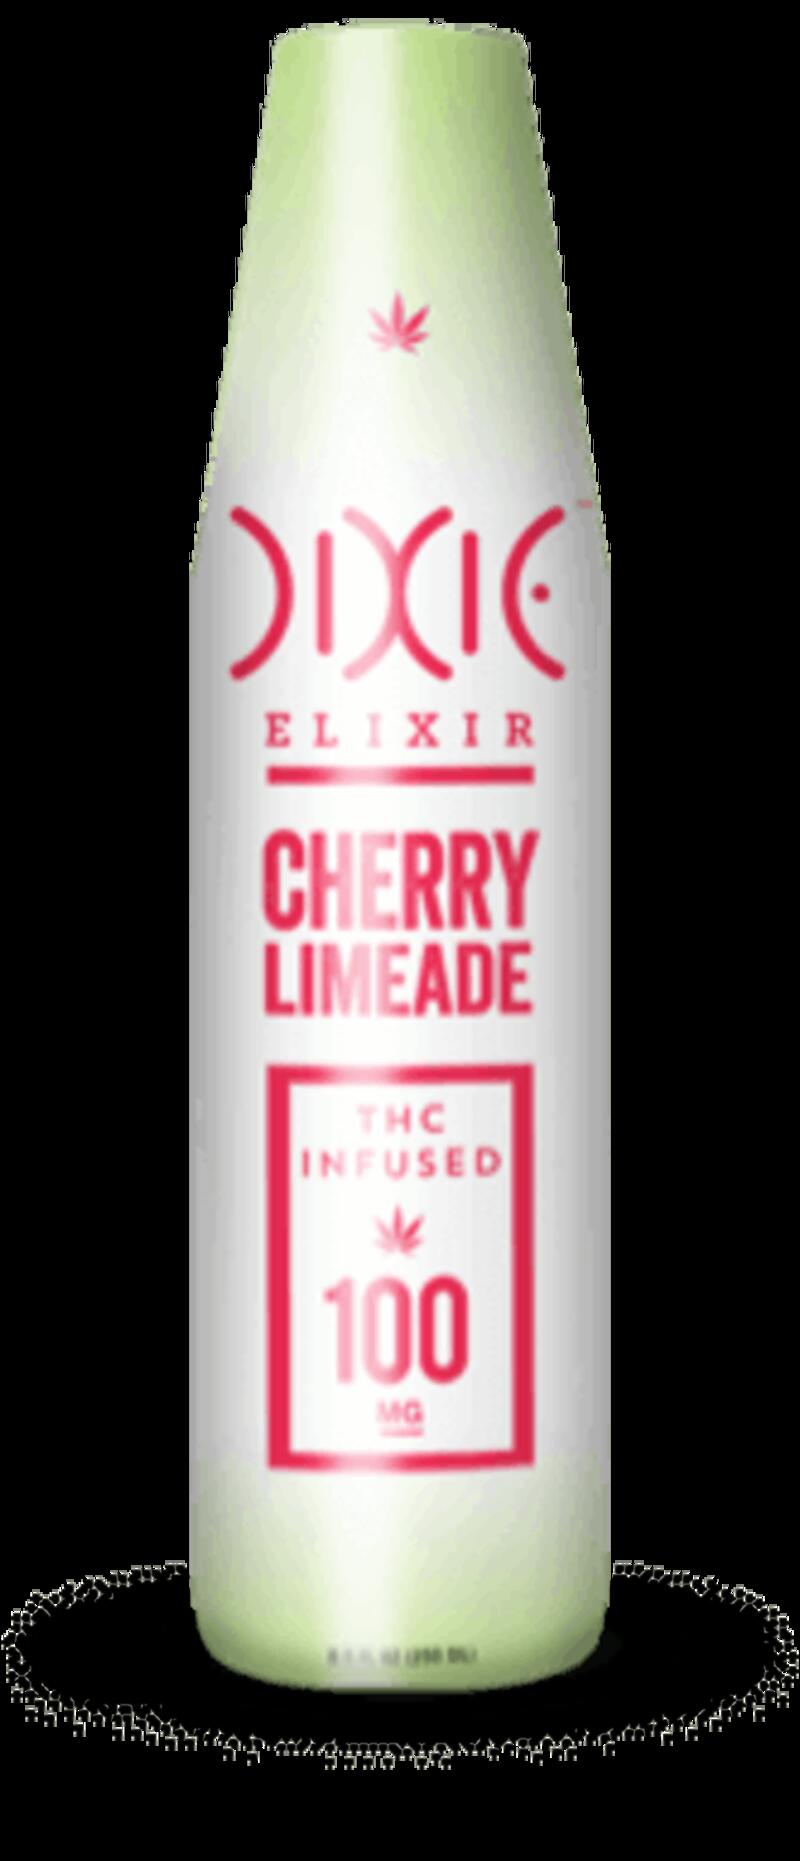 Cherry Limeade 200mg Elixir